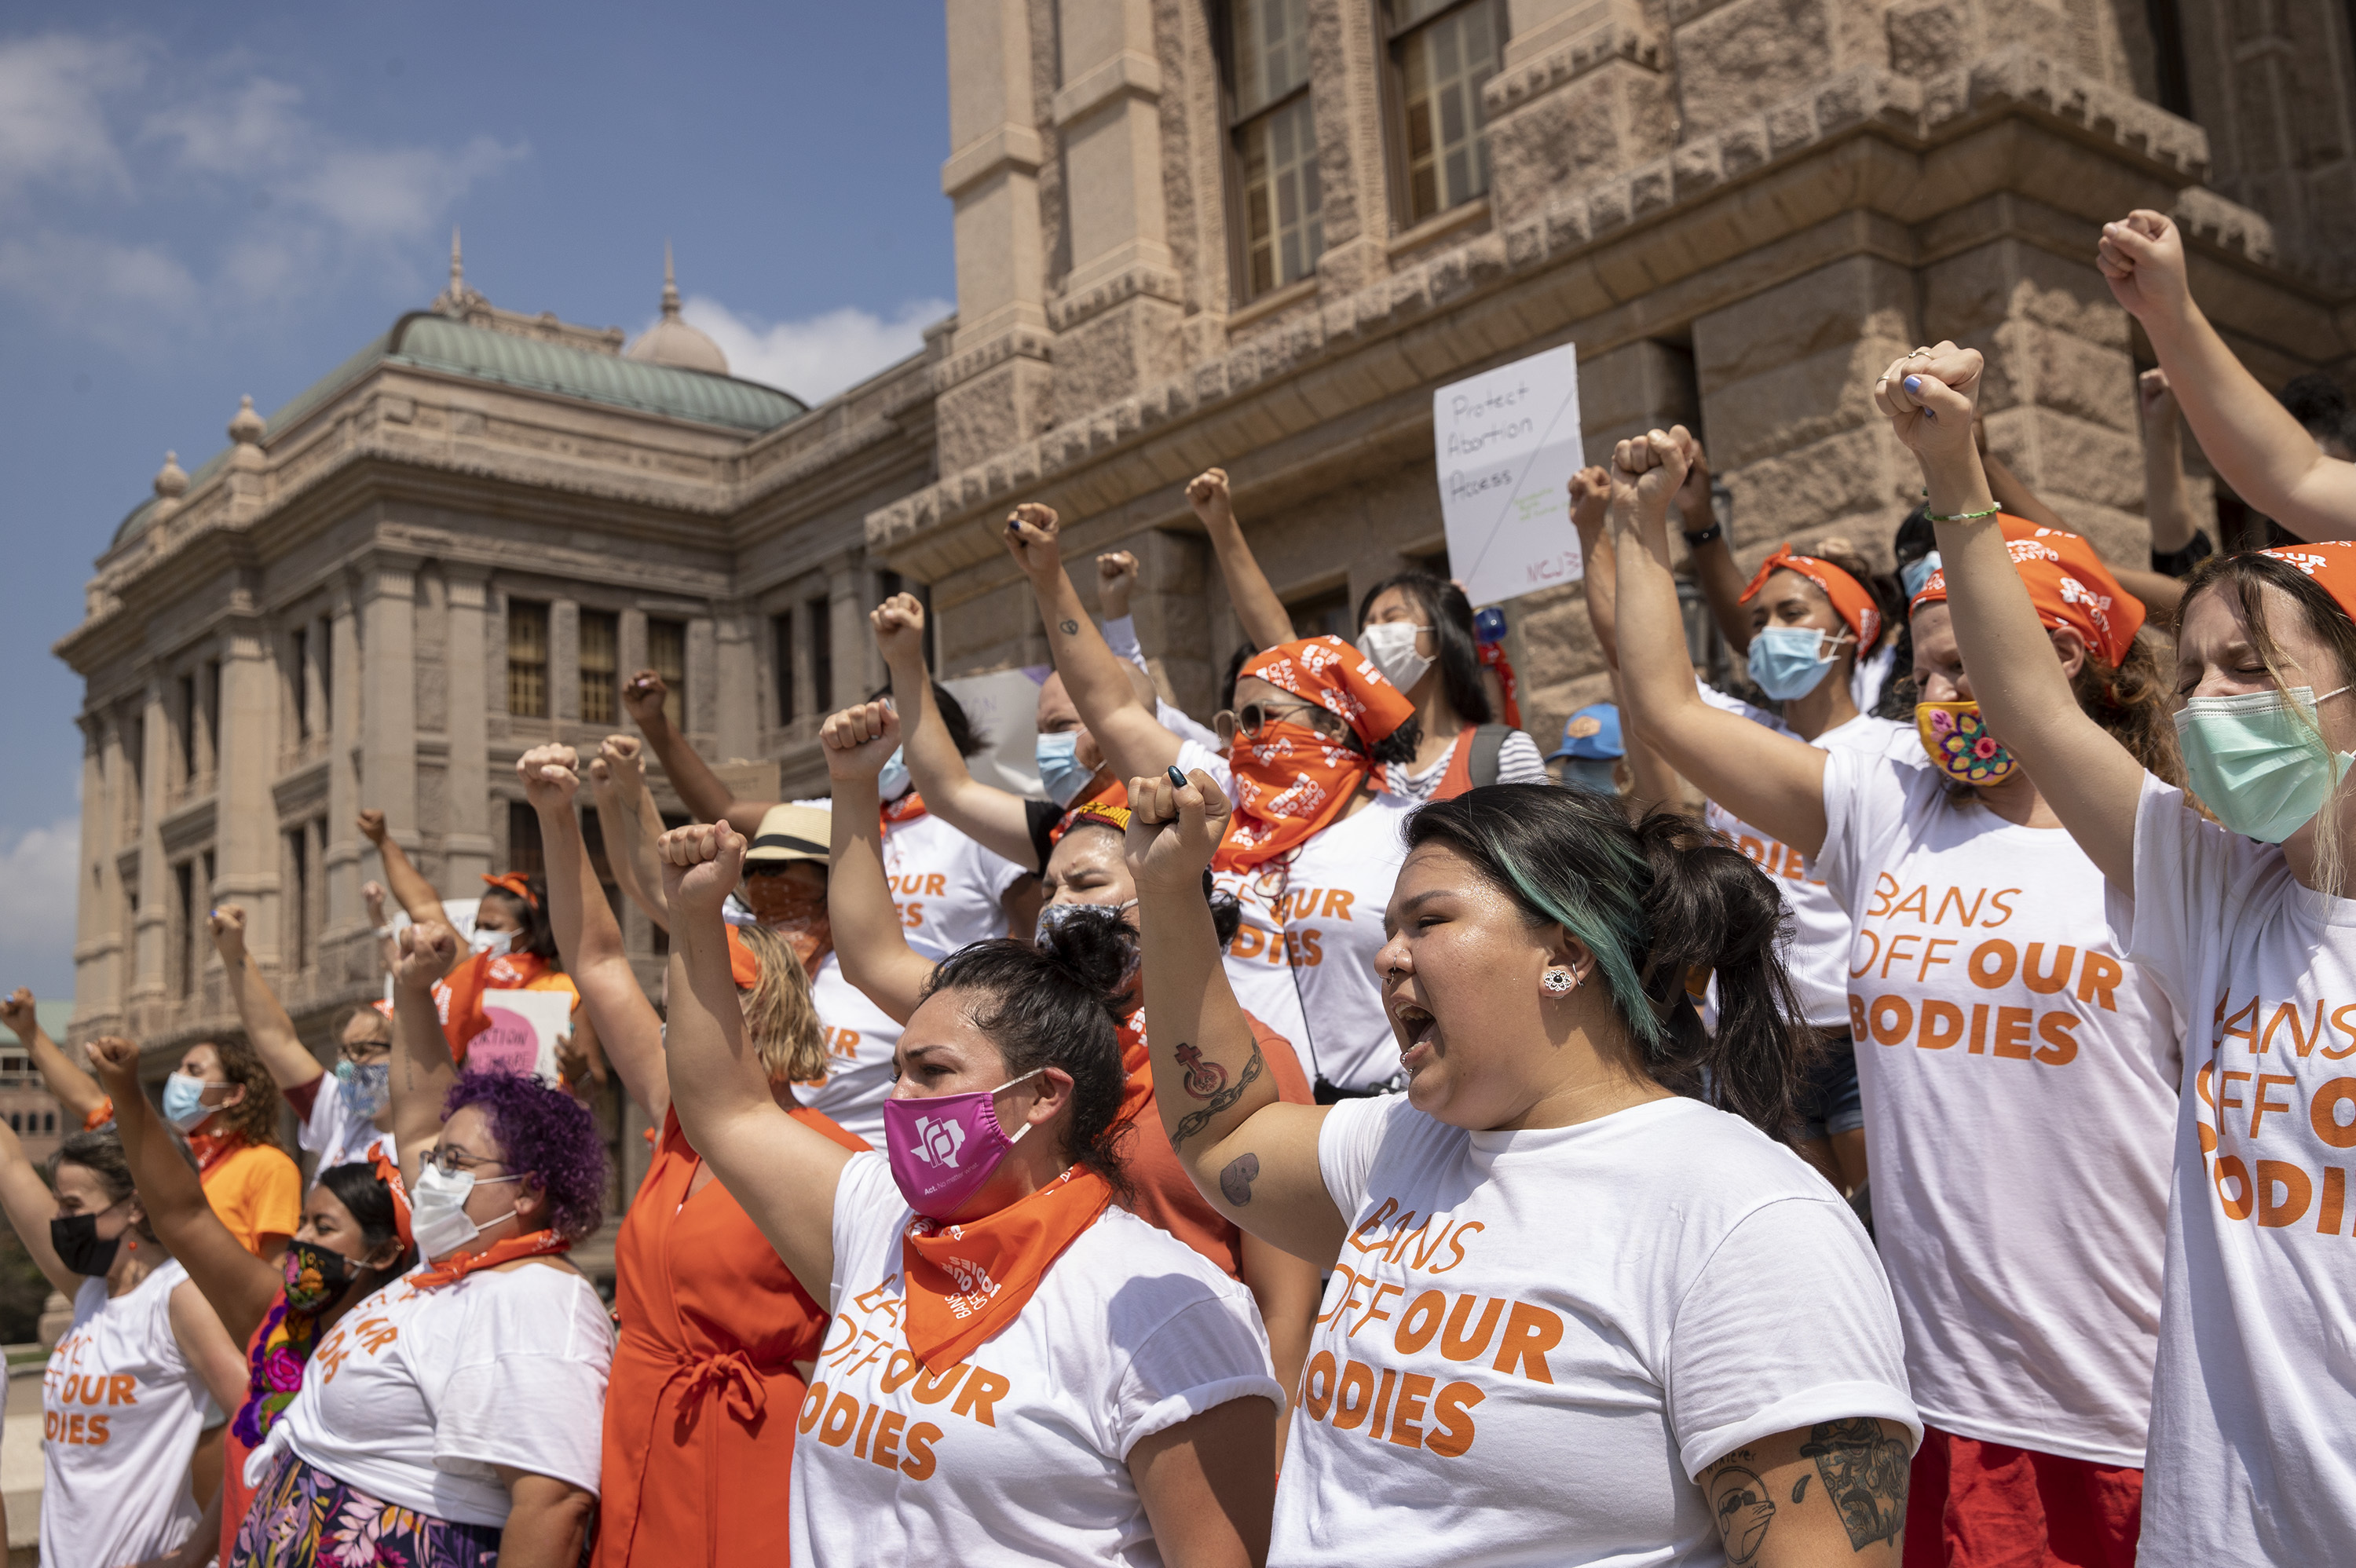 텍사스주의 ‘낙태 금지법’에 항의하는 시위